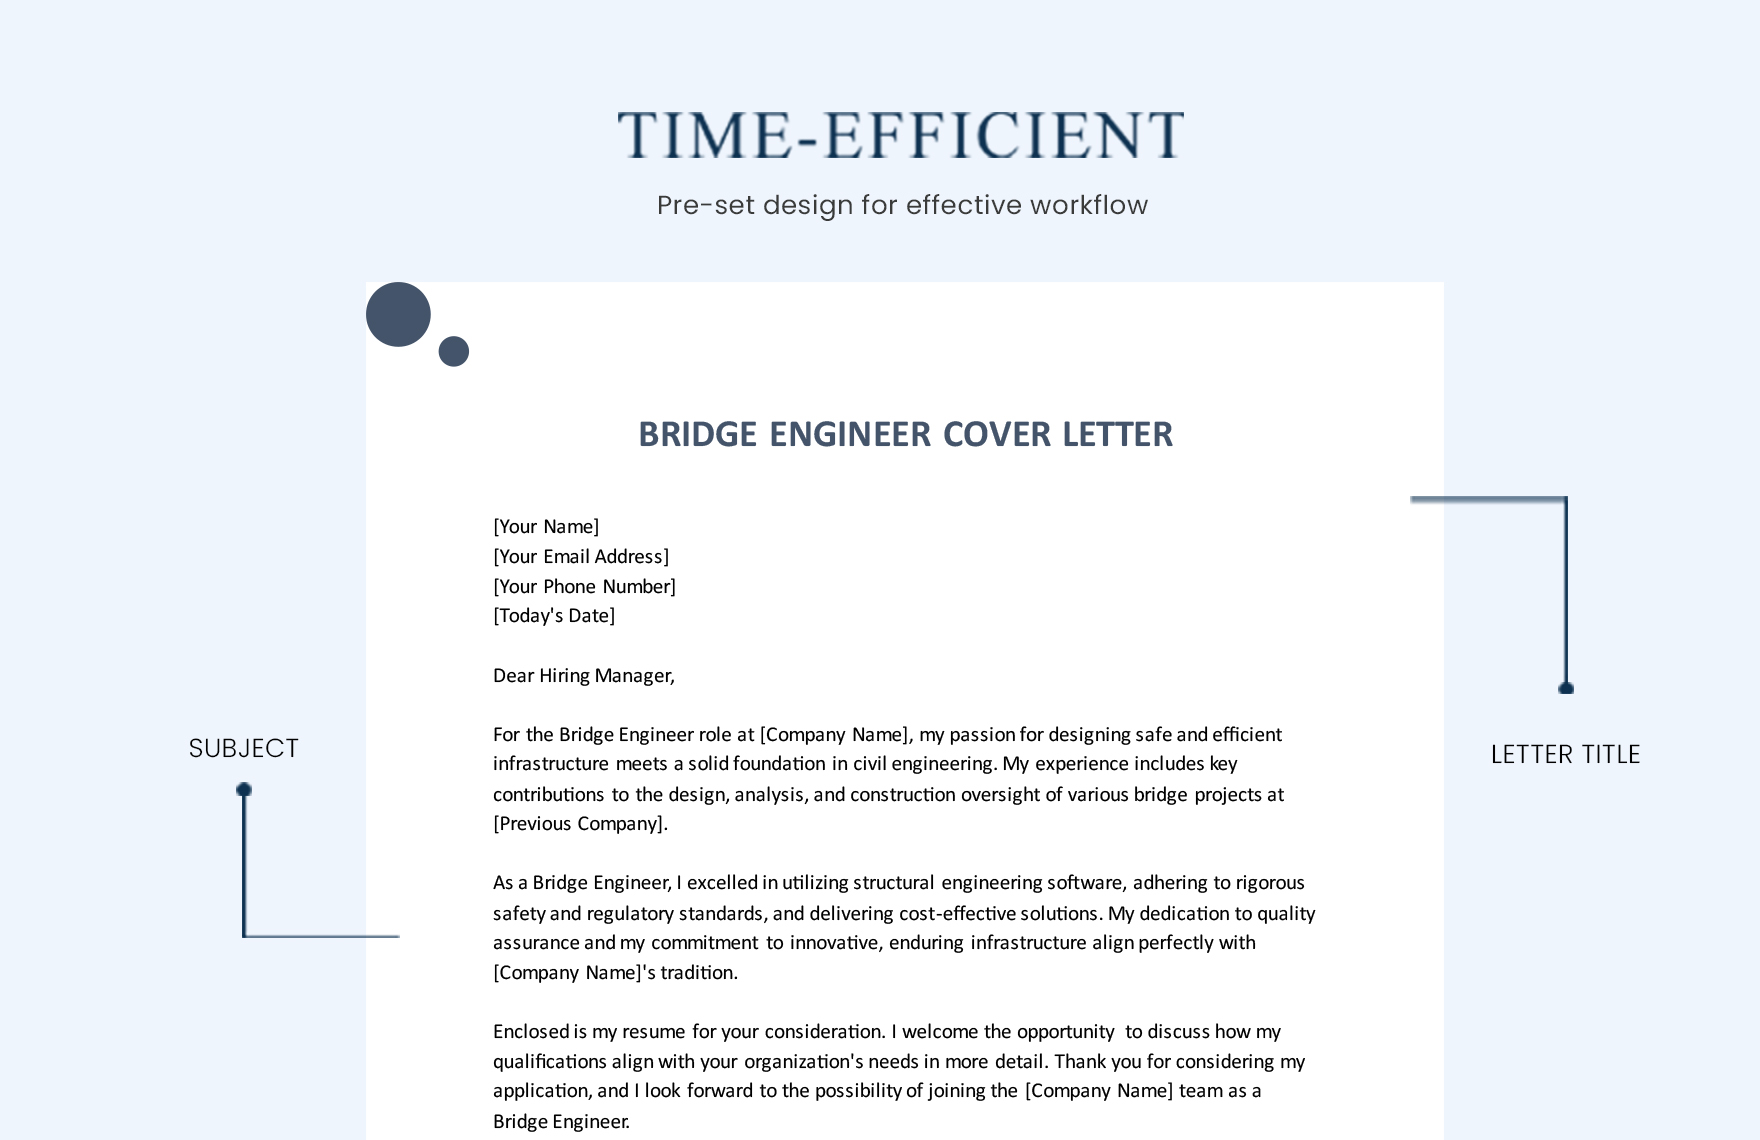 Bridge Engineer Cover Letter